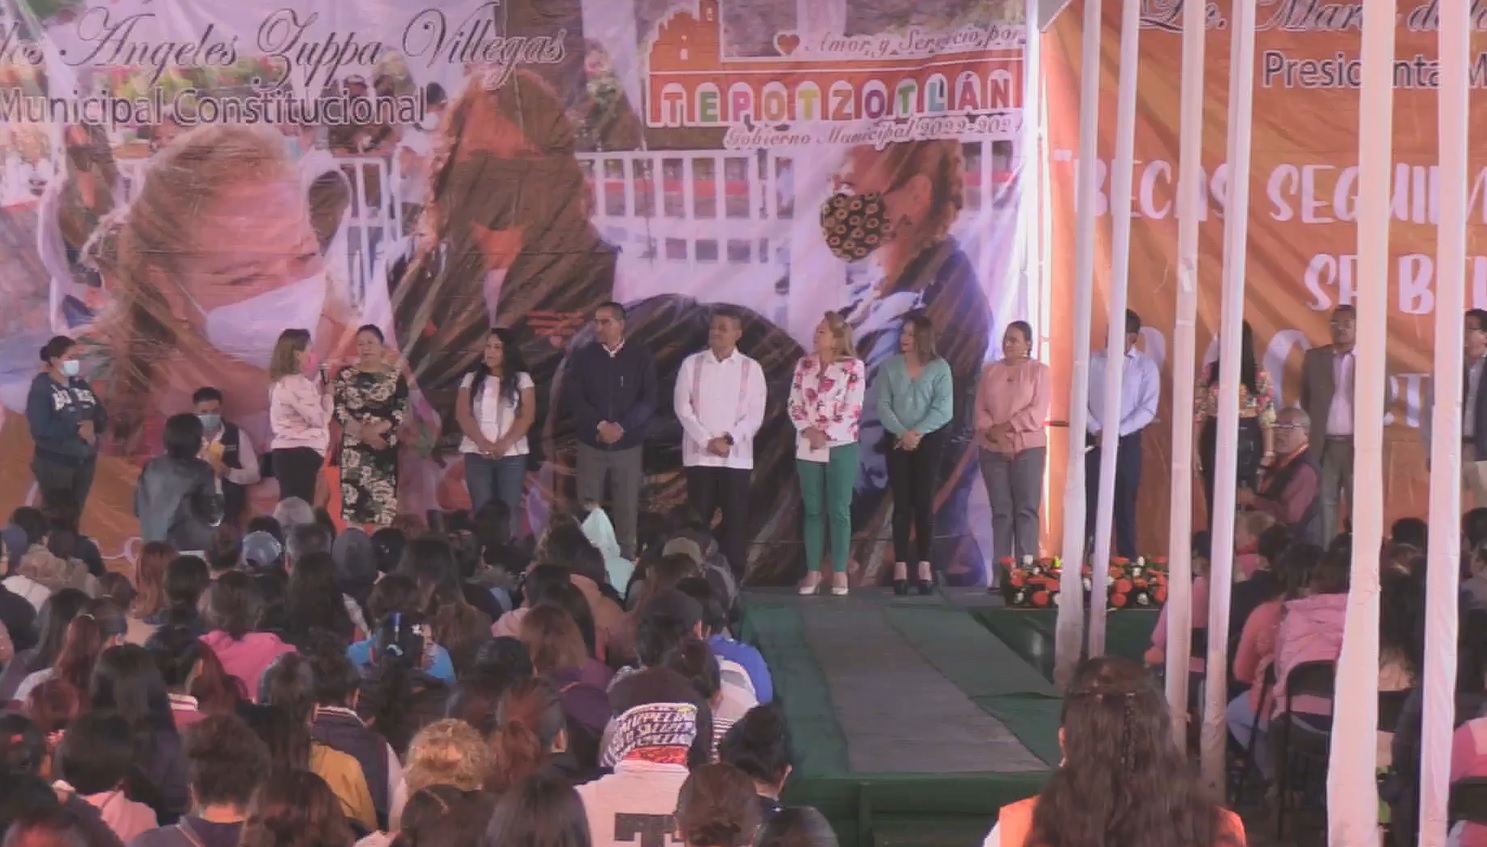 El gobierno que preside María de los Ángles Zuppa Villegas hizo entrega de becas escolares así como apoyos por parte del DIF municipal en la explanada de Tepotzotlán Imagen: Captura